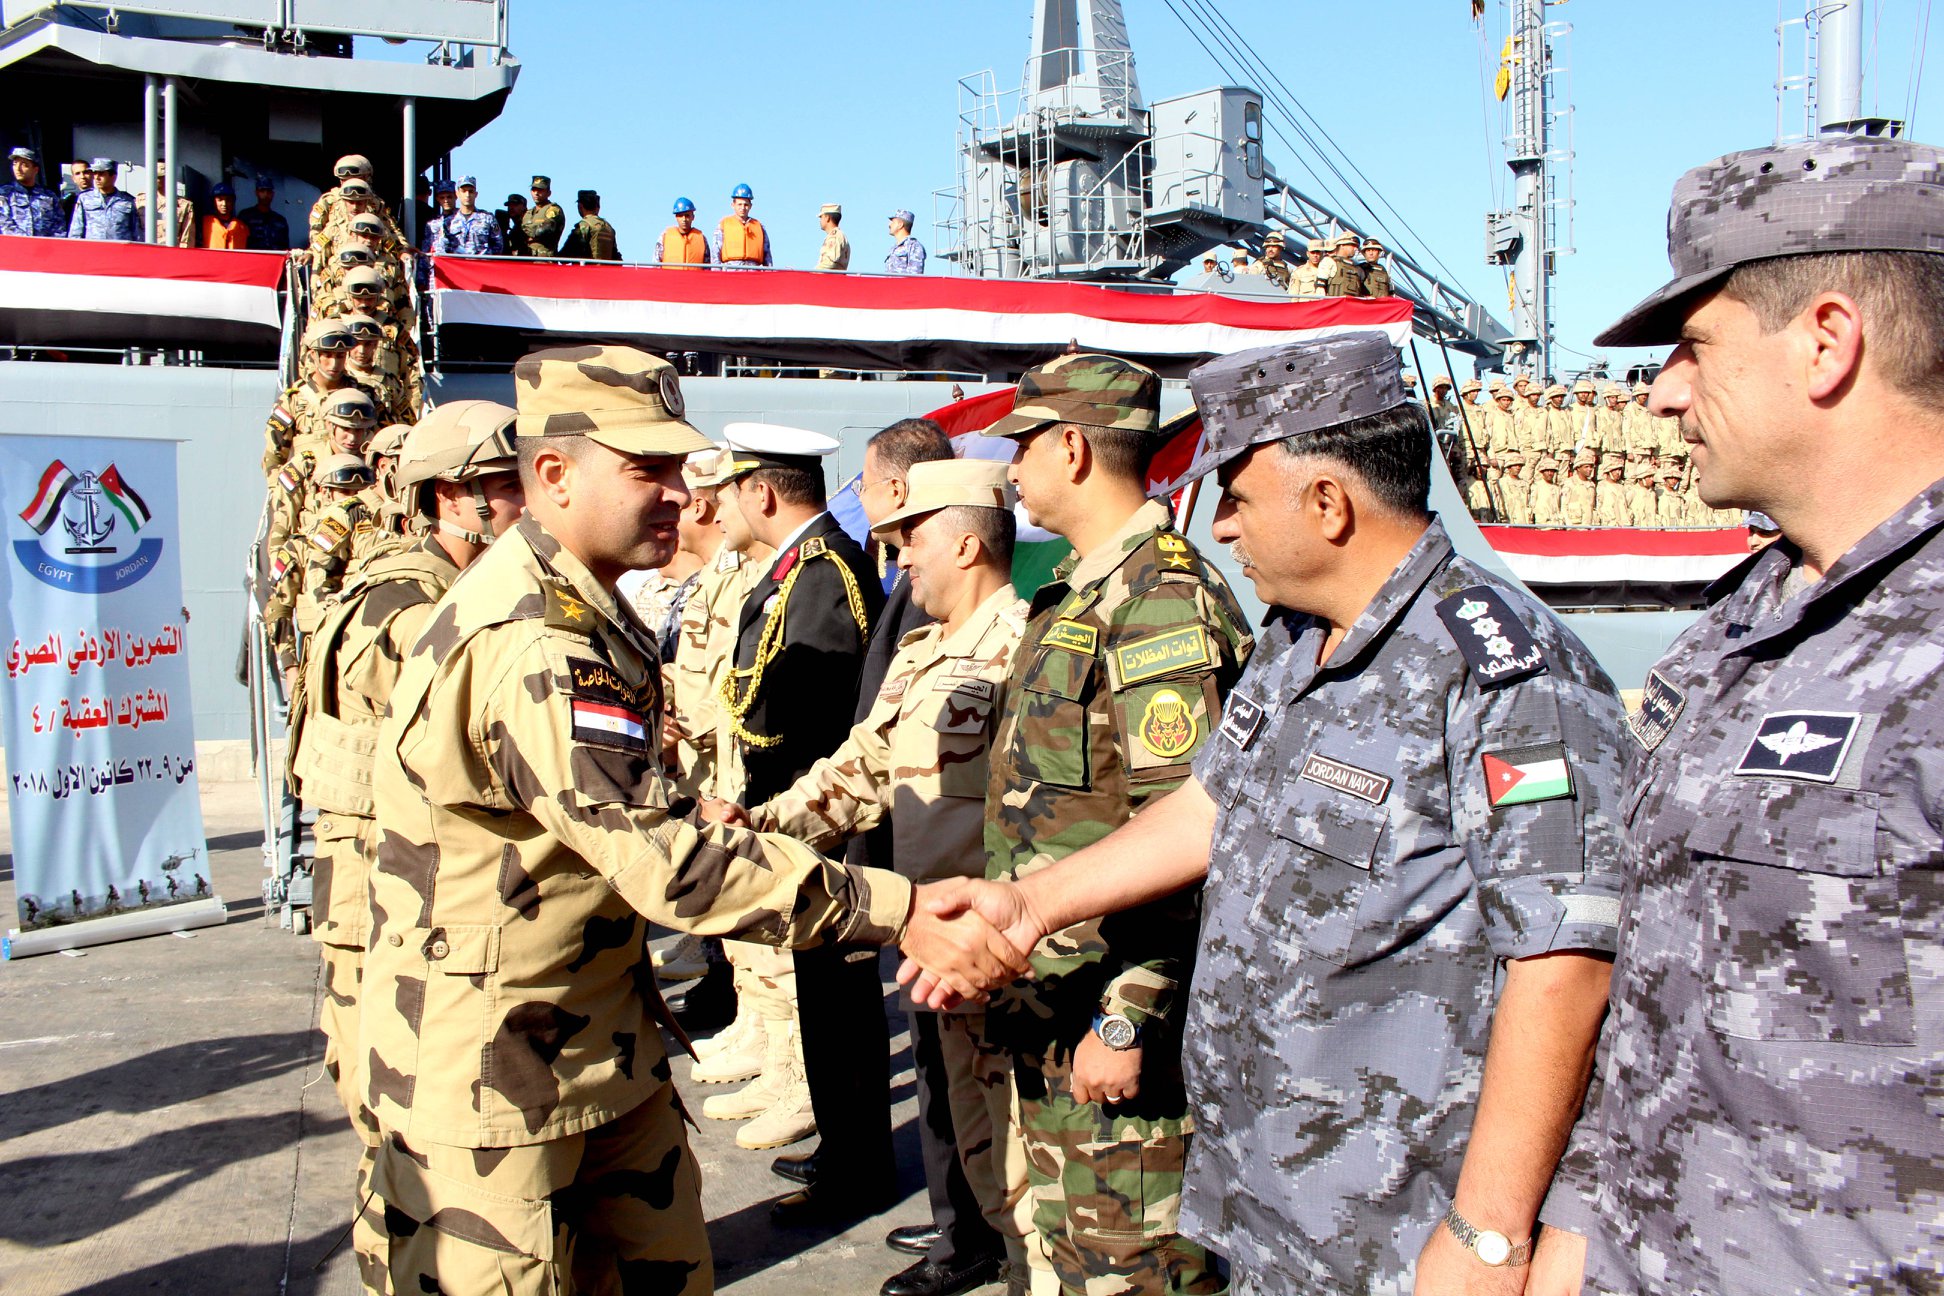   عناصر من القوات المسلحة المصرية والأردنية تنفذان التدريب المشترك المصرى الأردنى «العقبة -4»